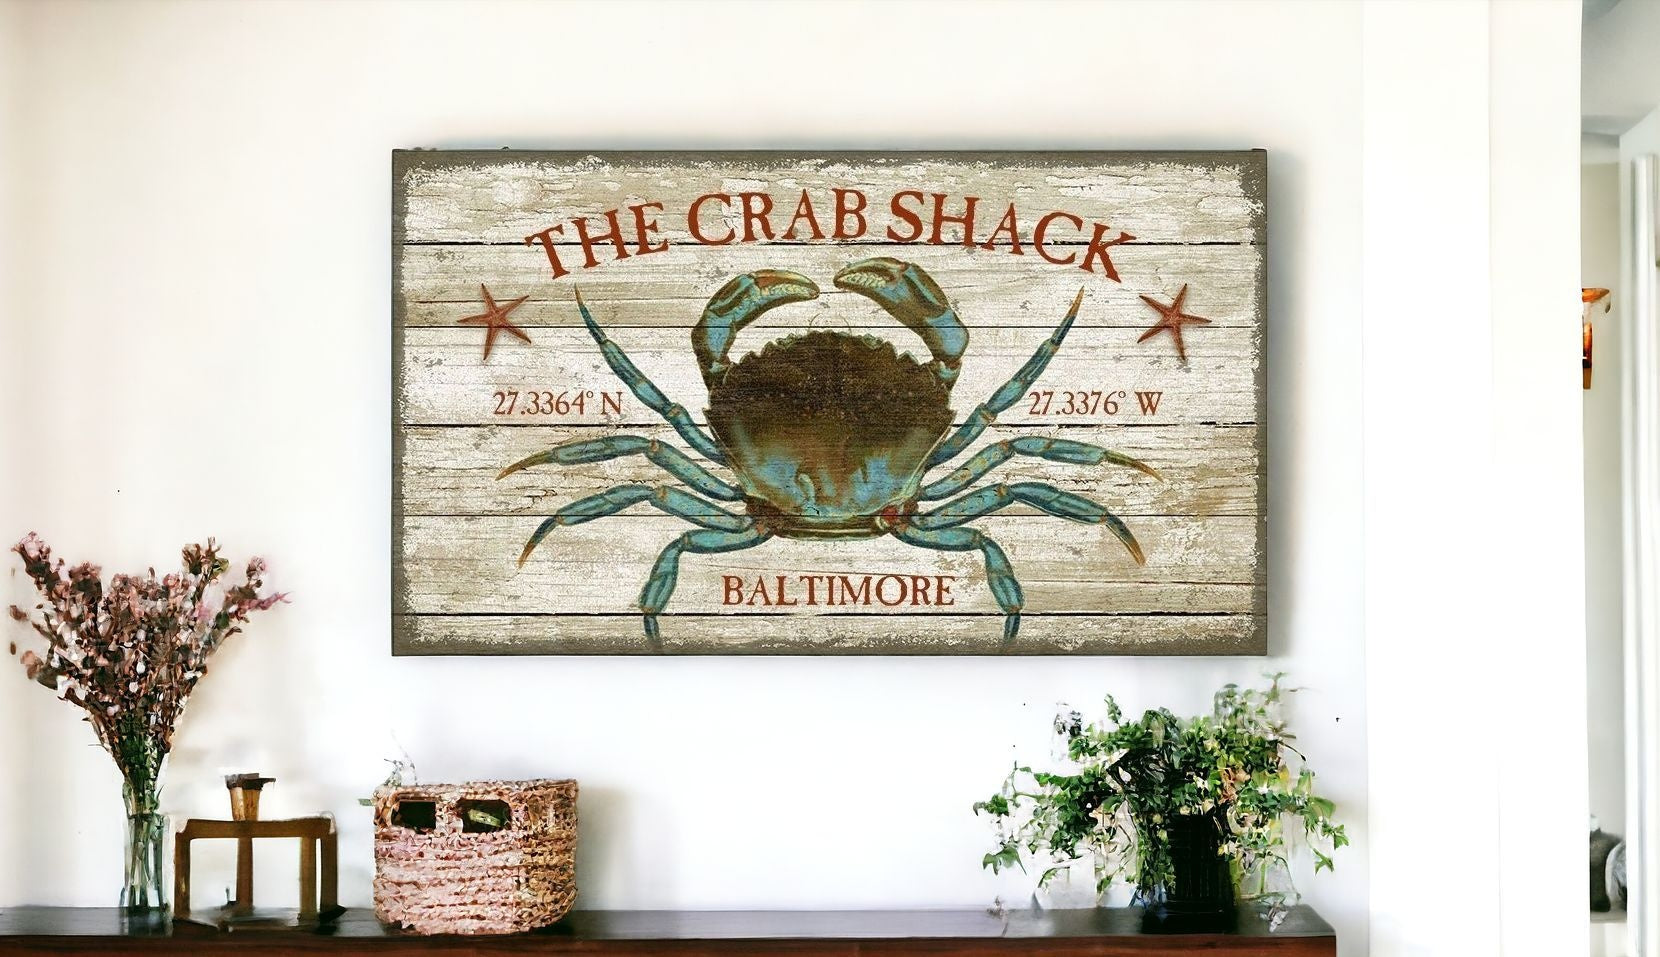 Baltimore Crab Shack Wall Art